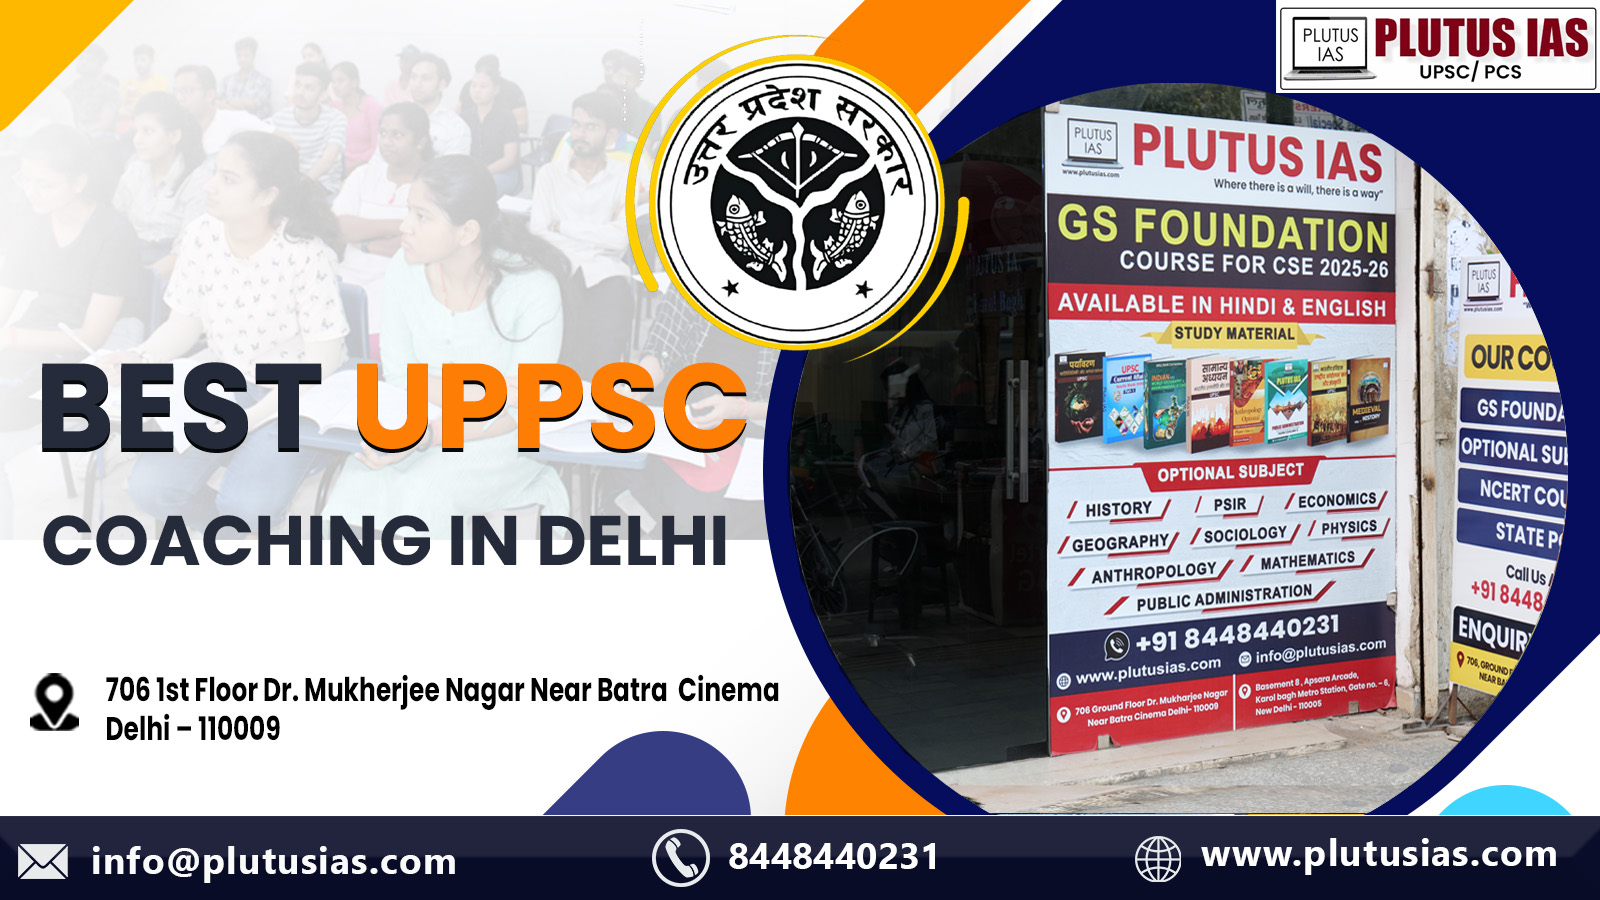 Plutus IAS Best UPPSC Coaching in Delhi